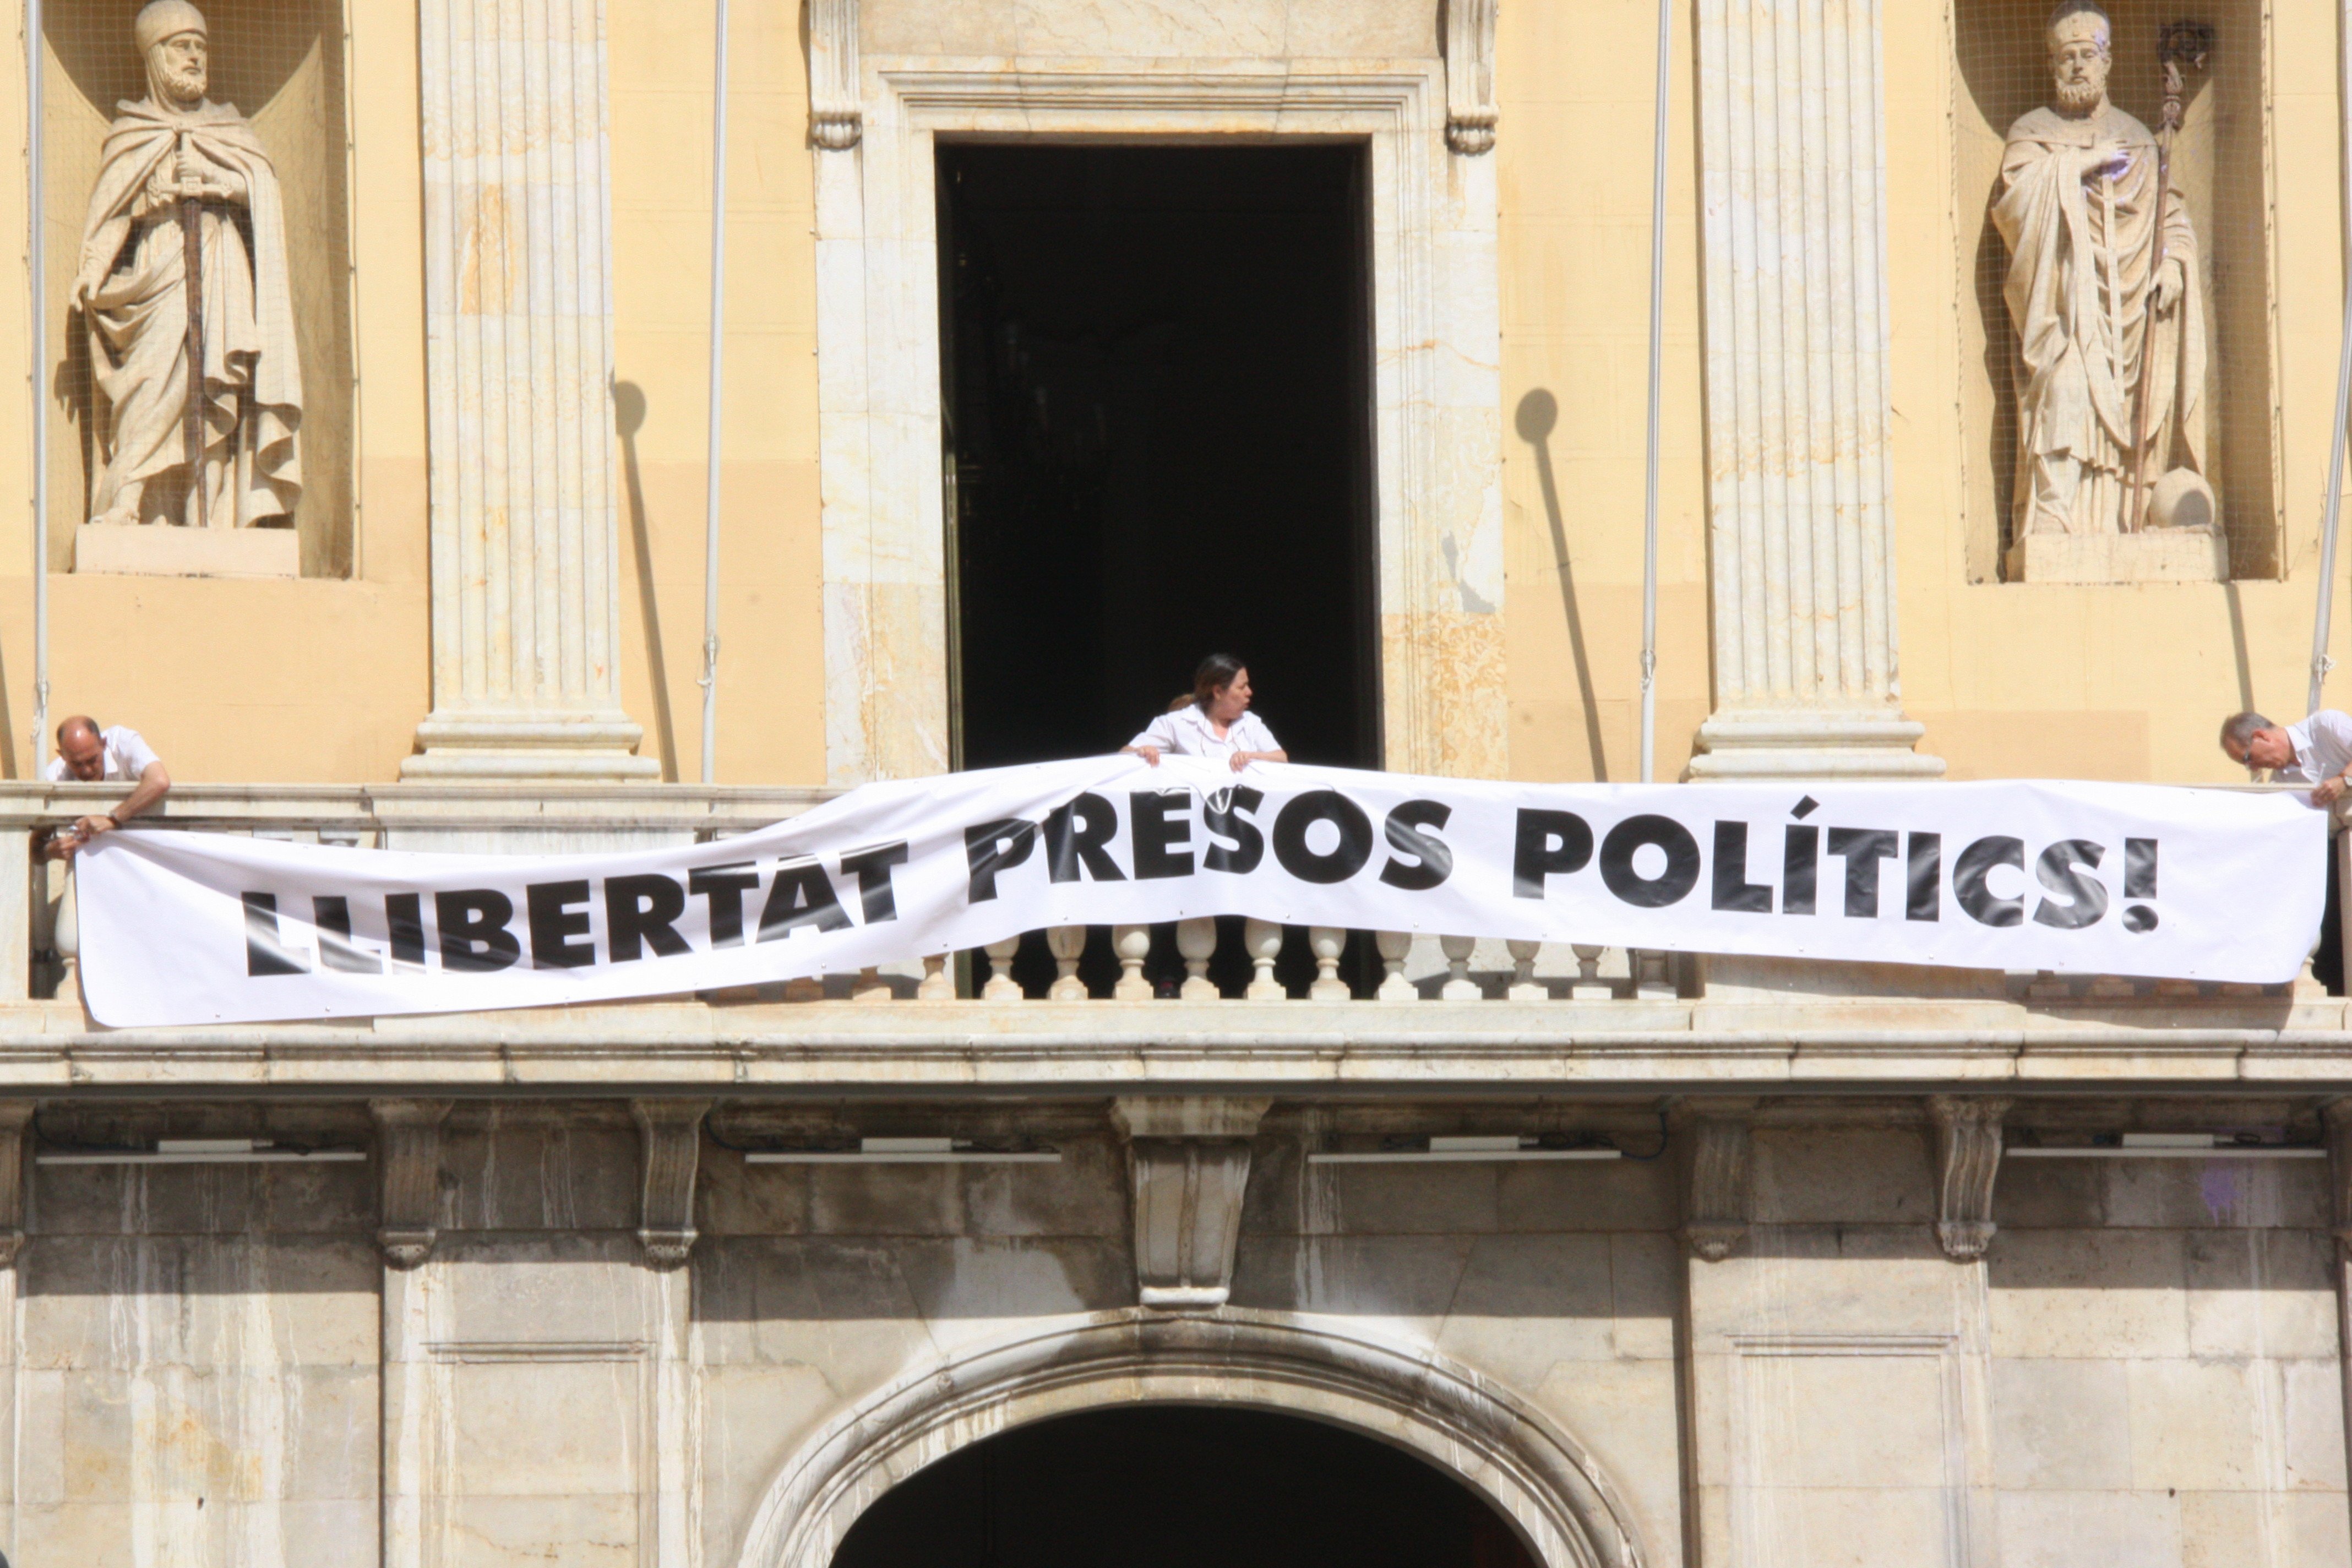 La Junta Electoral ordena retirar la pancarta de los presos del Ayuntamiento de Tarragona